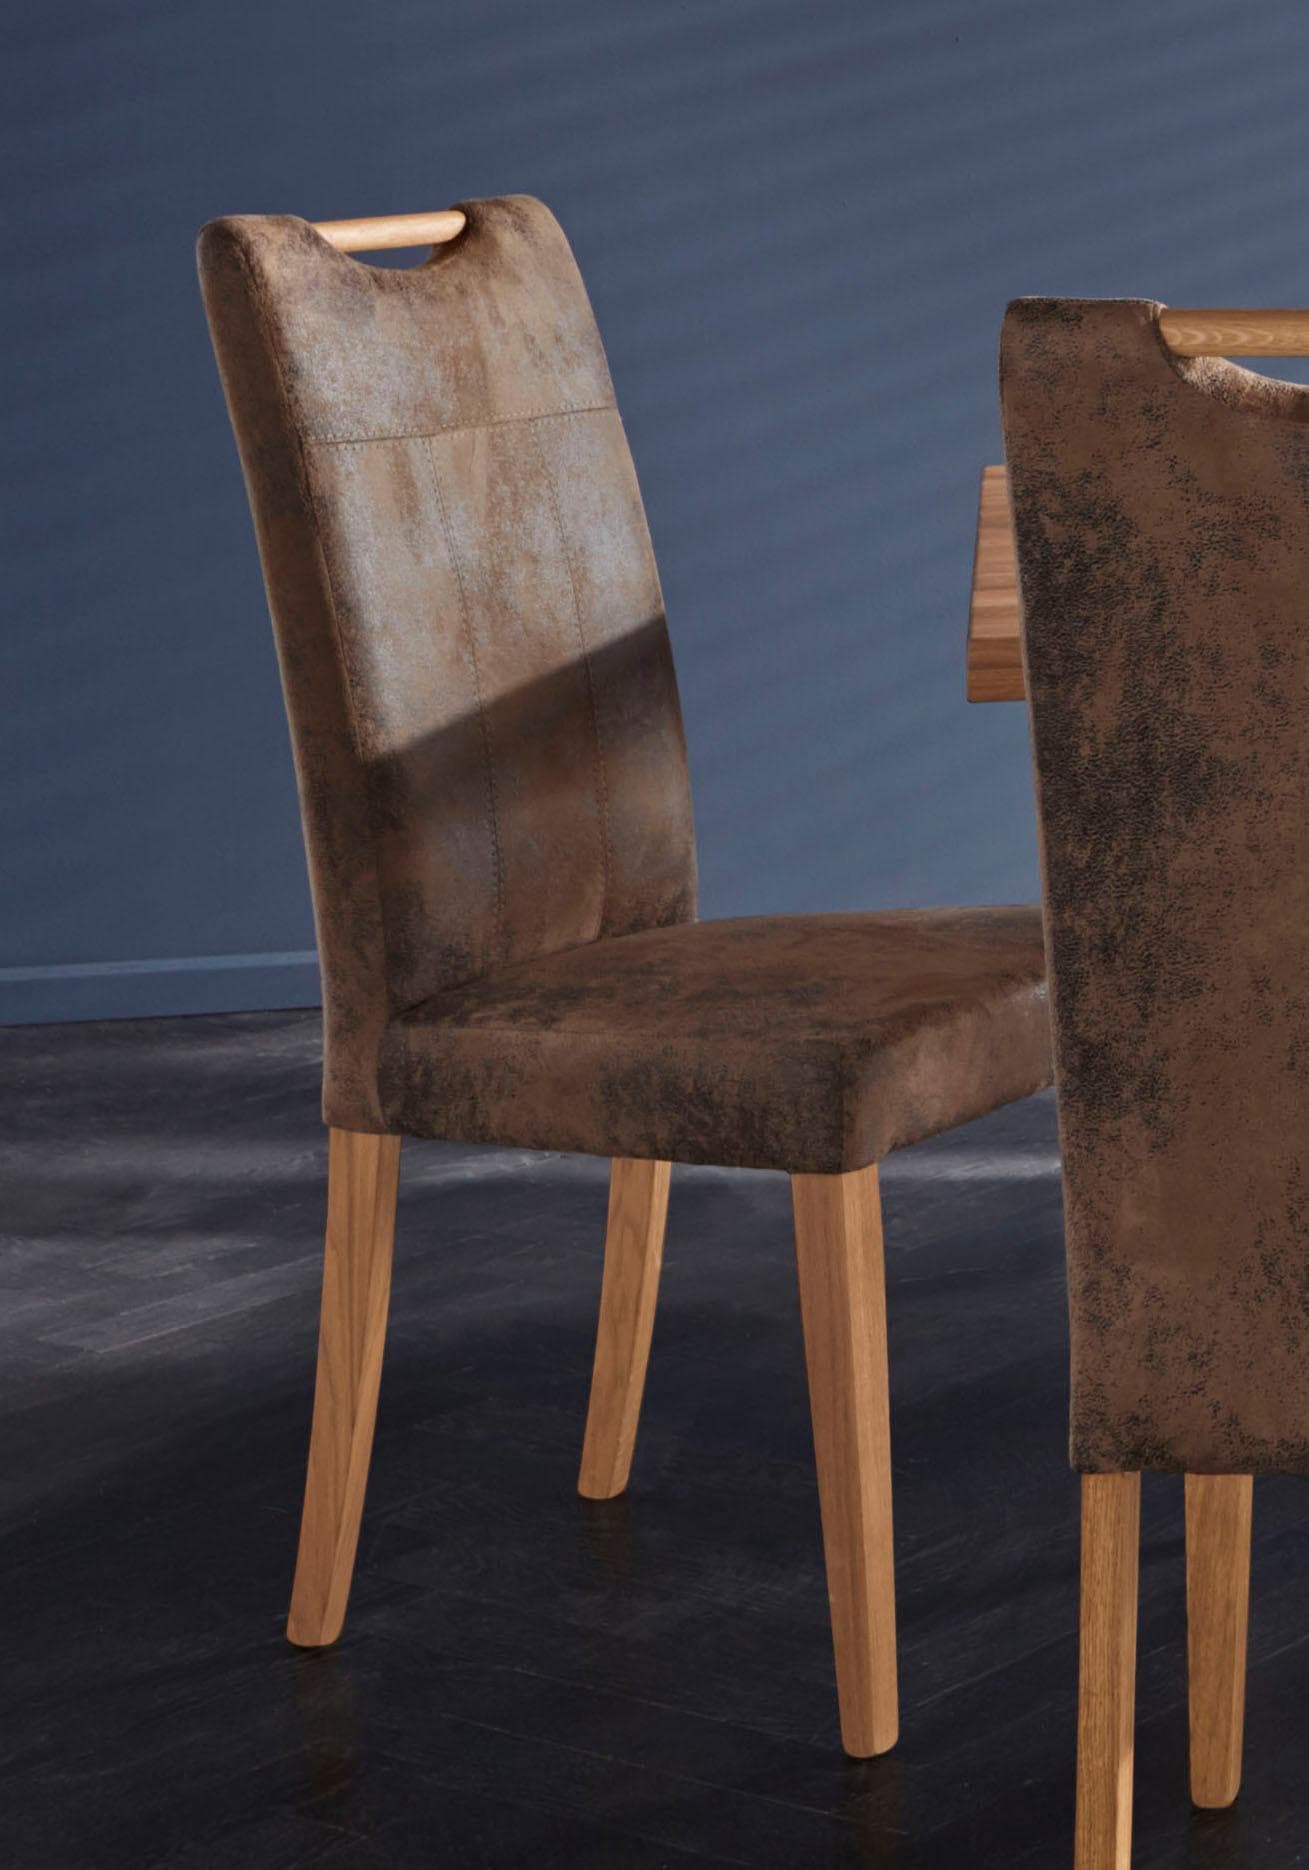 Ackermann kaufen 4-Fuss-Stühle online bei